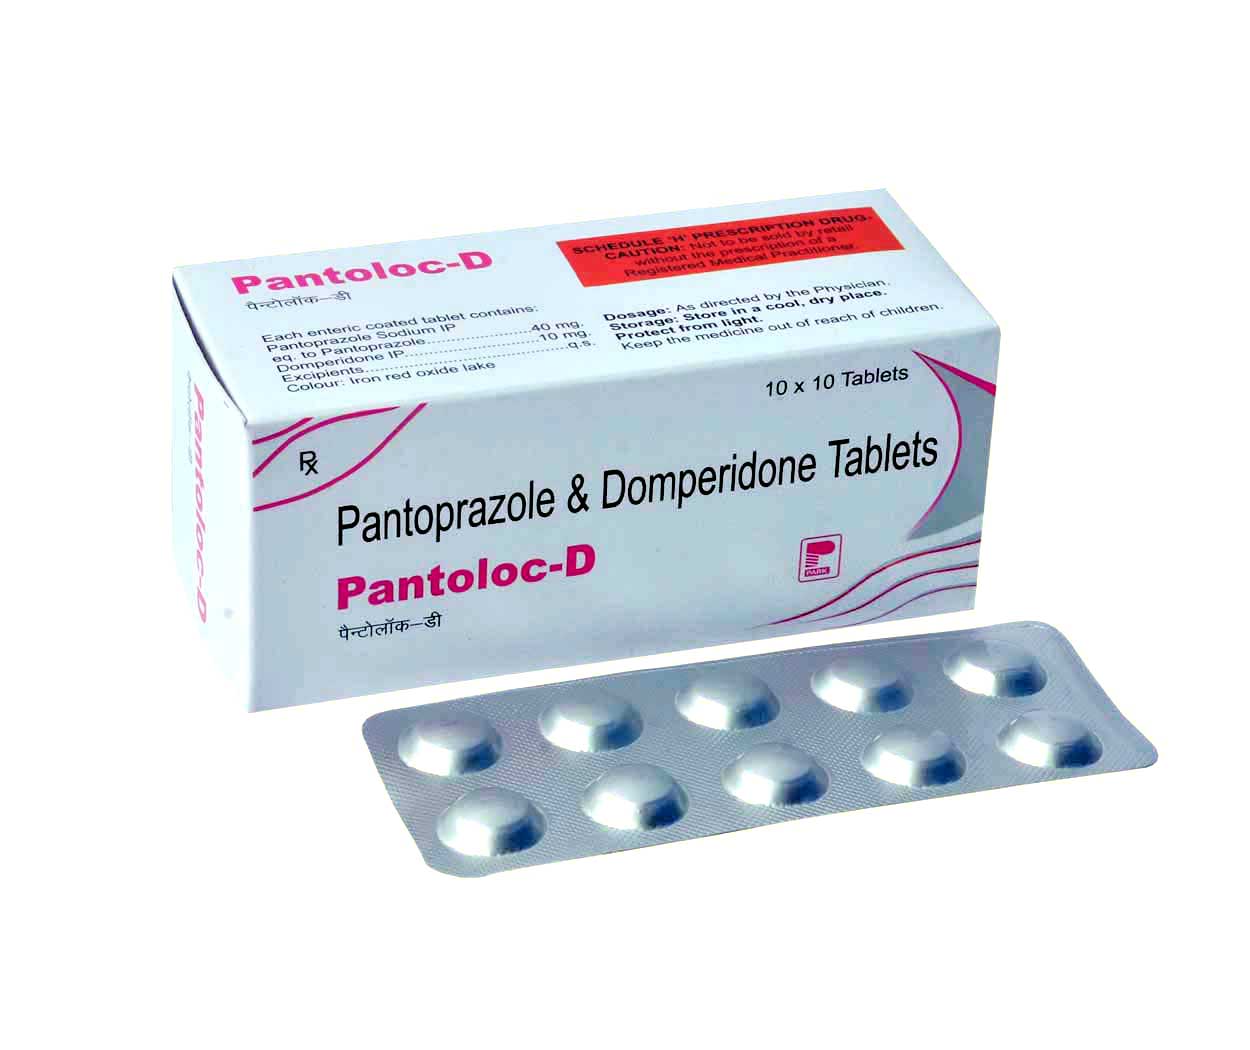 Product Name: Pantoloc D, Compositions of Pantoloc D are Pantoprazole & Domperidone Tablets - Park Pharmaceuticals